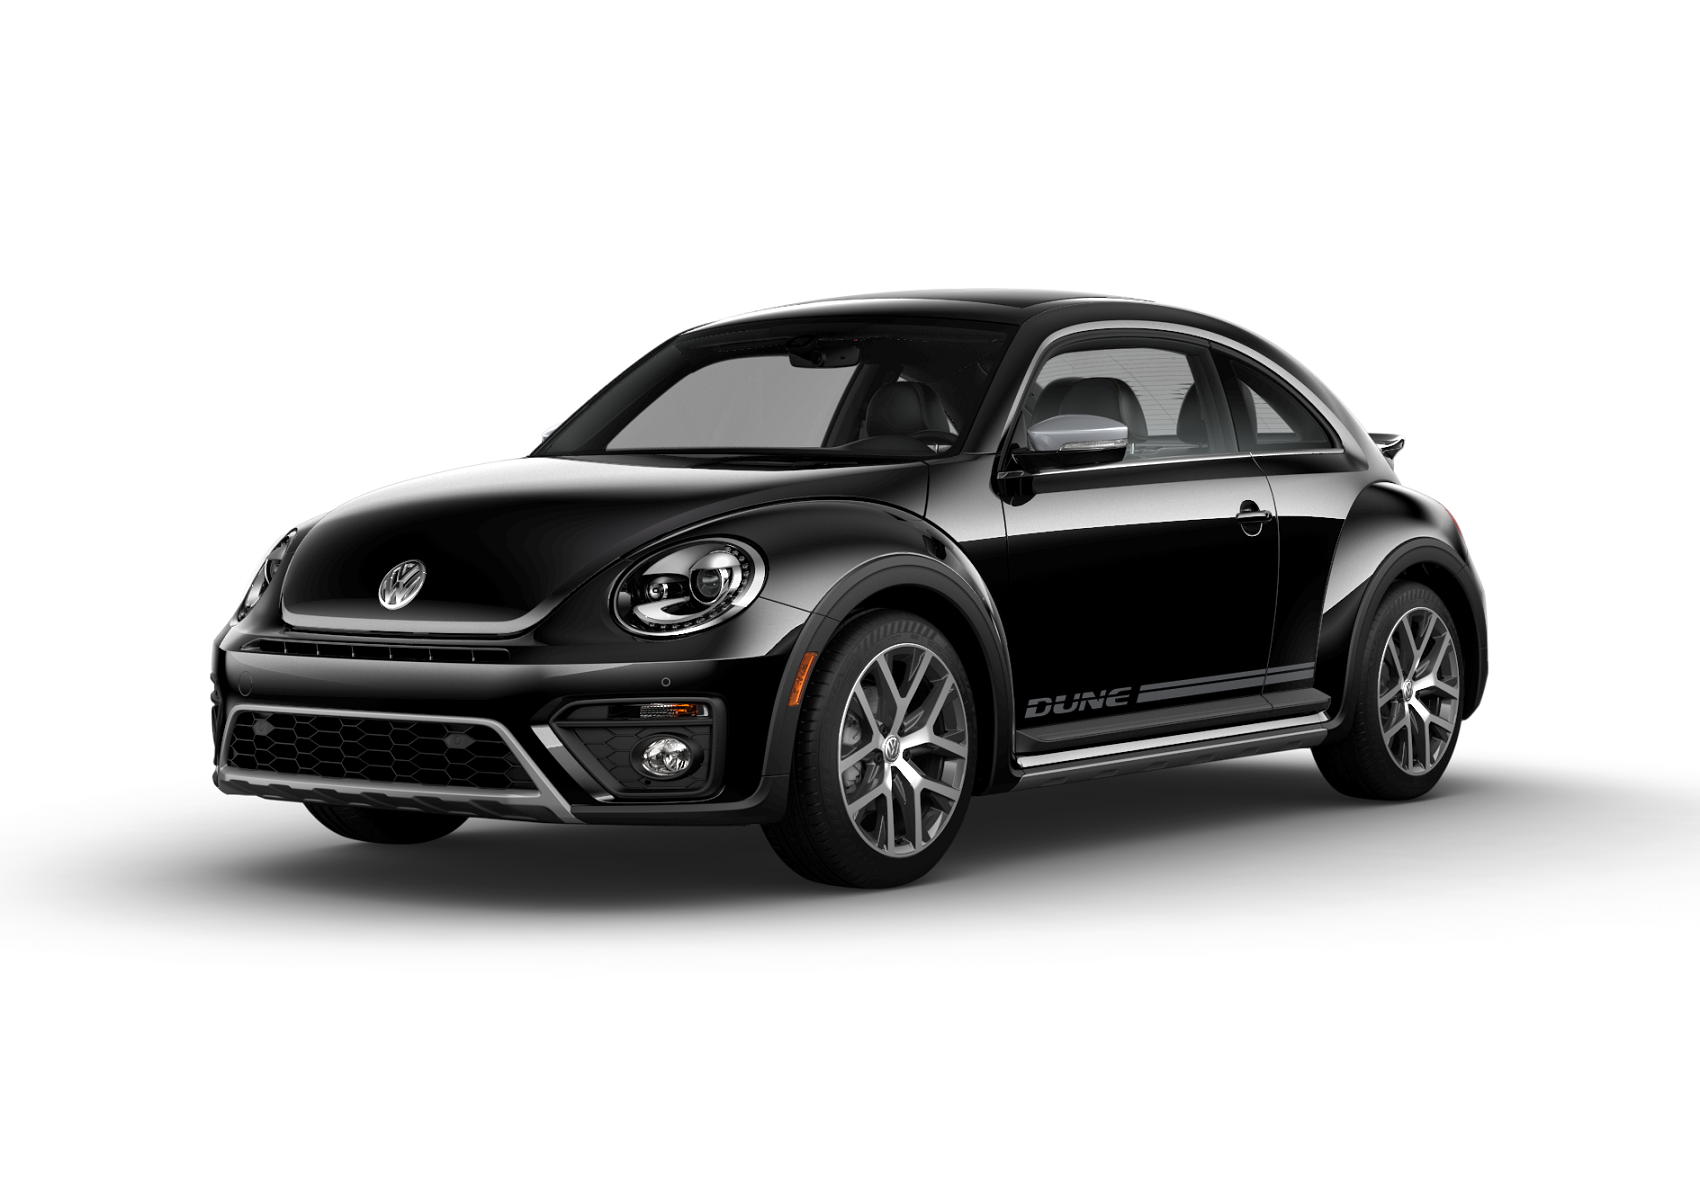 2018 Volkswagen Beetle Dune Specs and Features